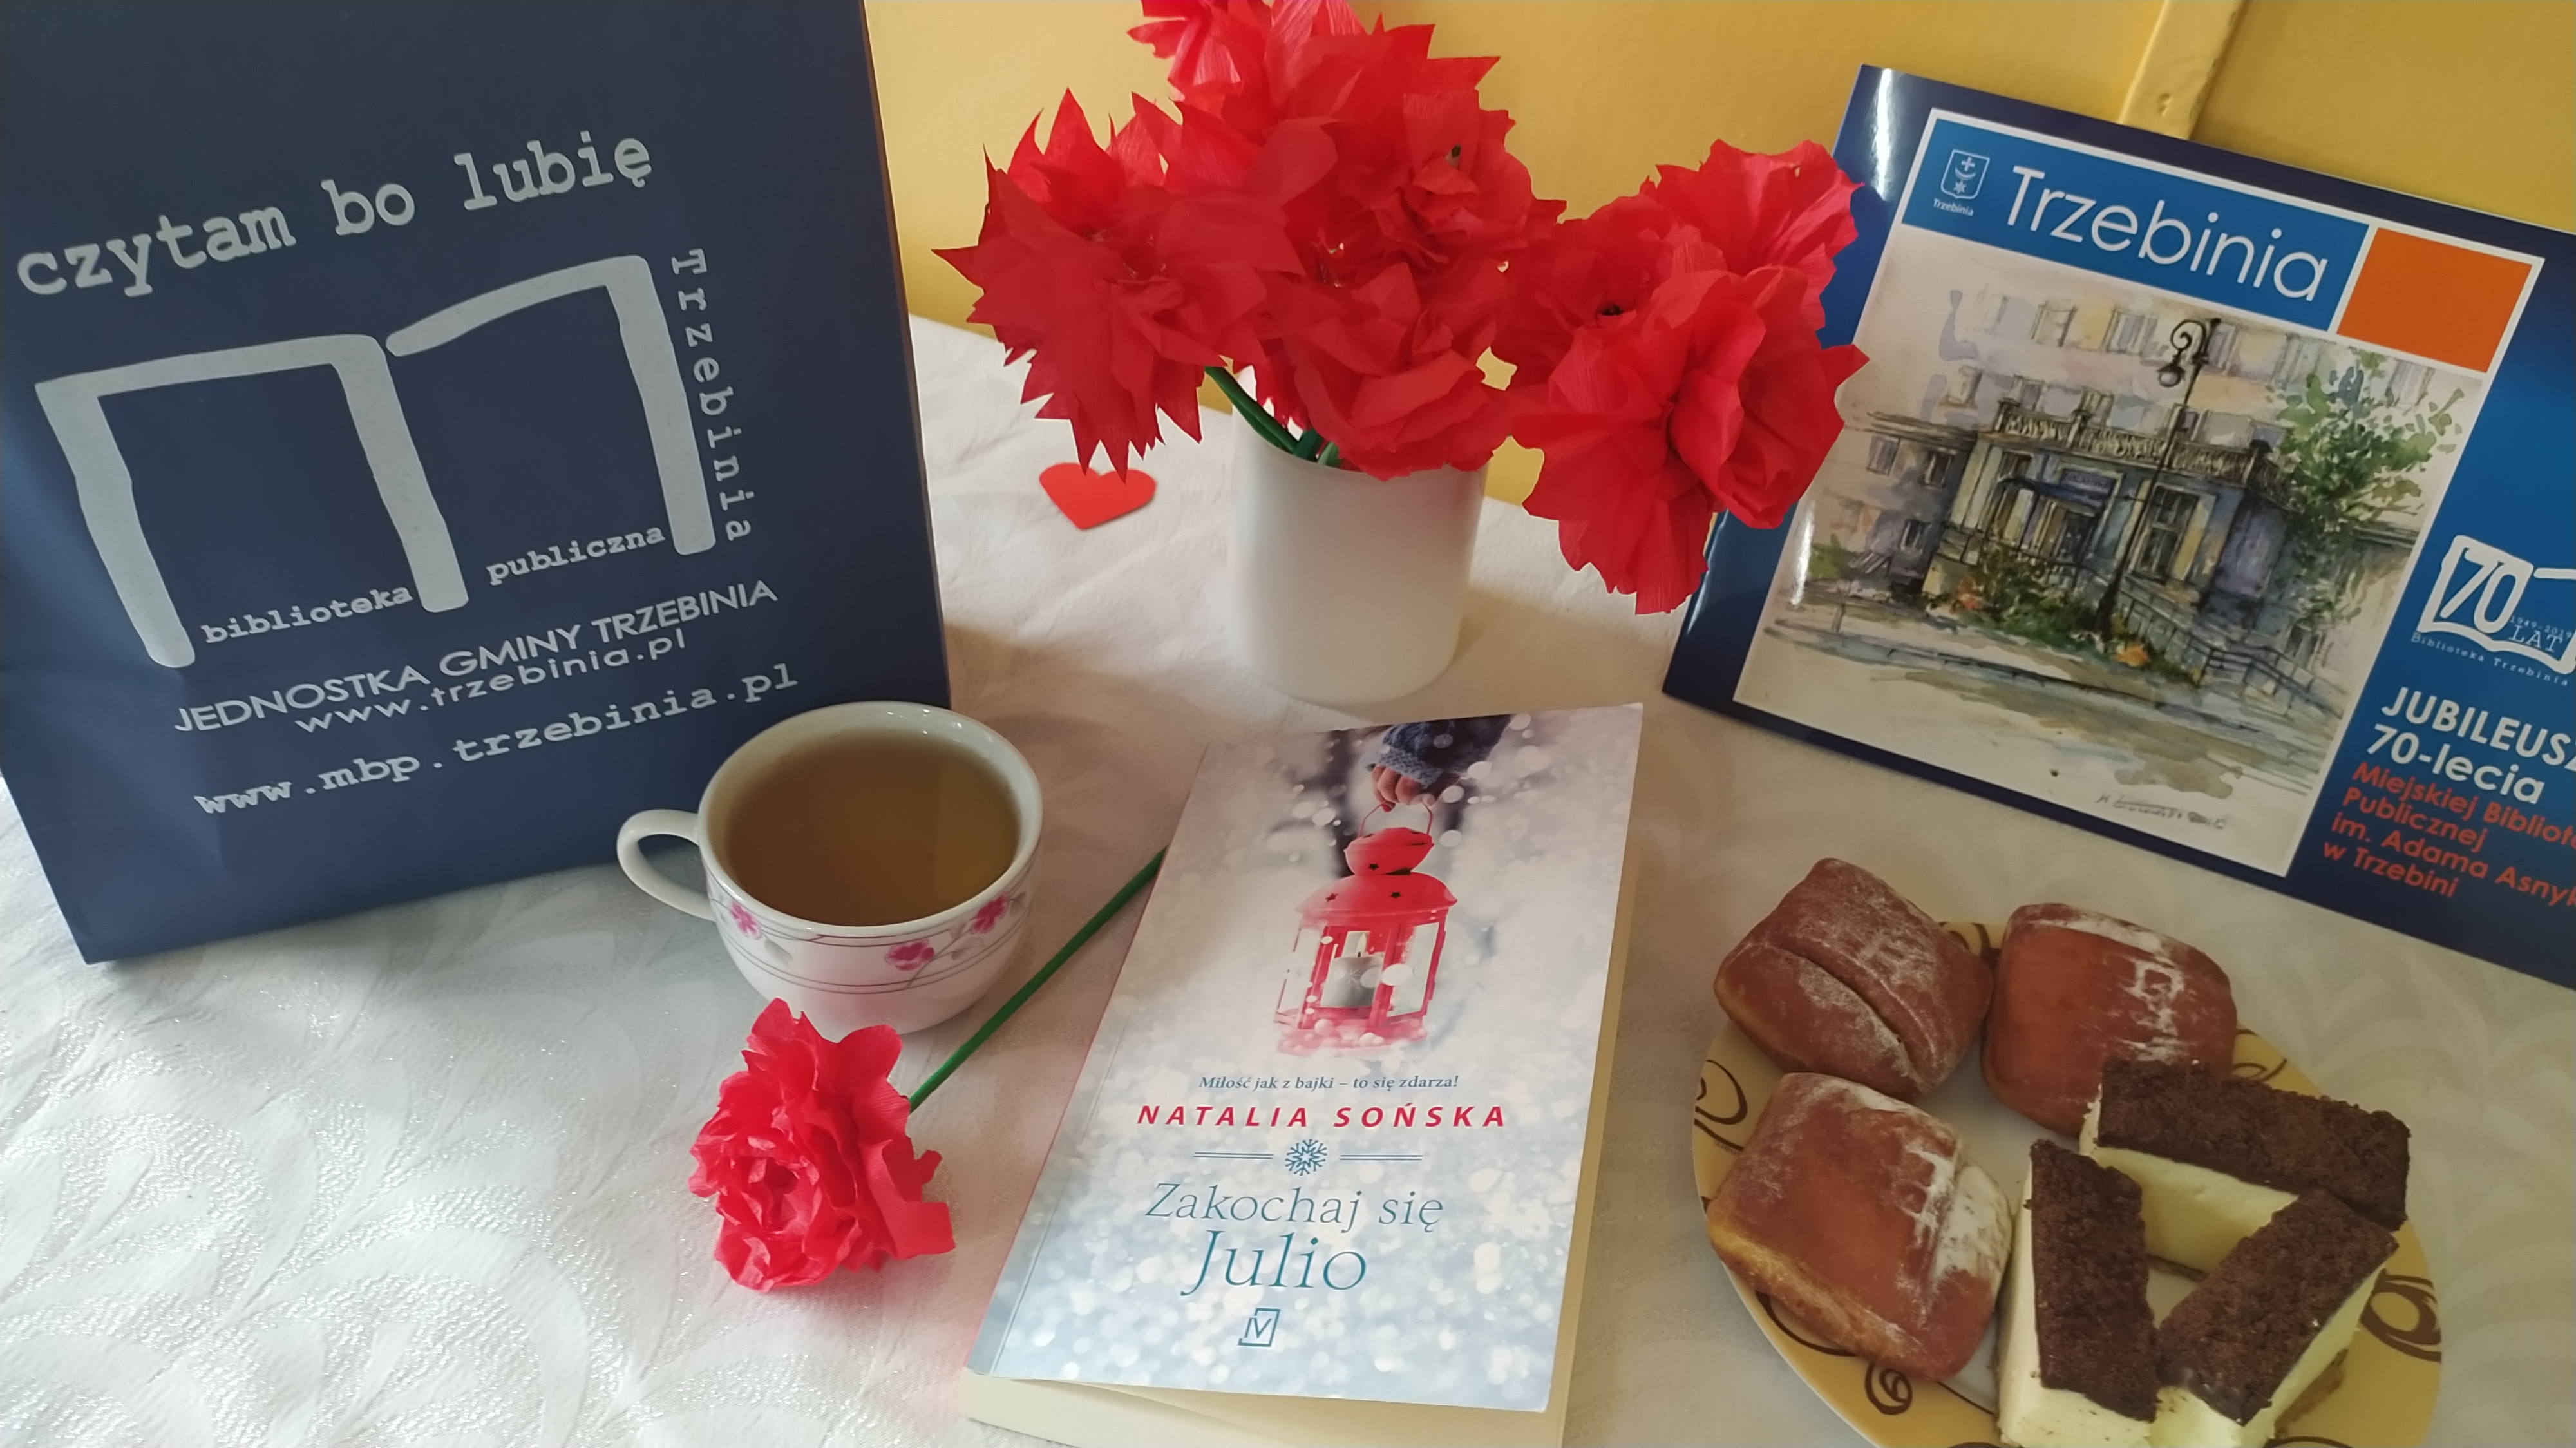 Zdjęcie z niespodzianką przygotowaną dla Jubilatki. Stolik, a na nim książka, filiżanka z herbatą, talerzyk z poczęstunkiem i ozdobne kwiaty z bibuły